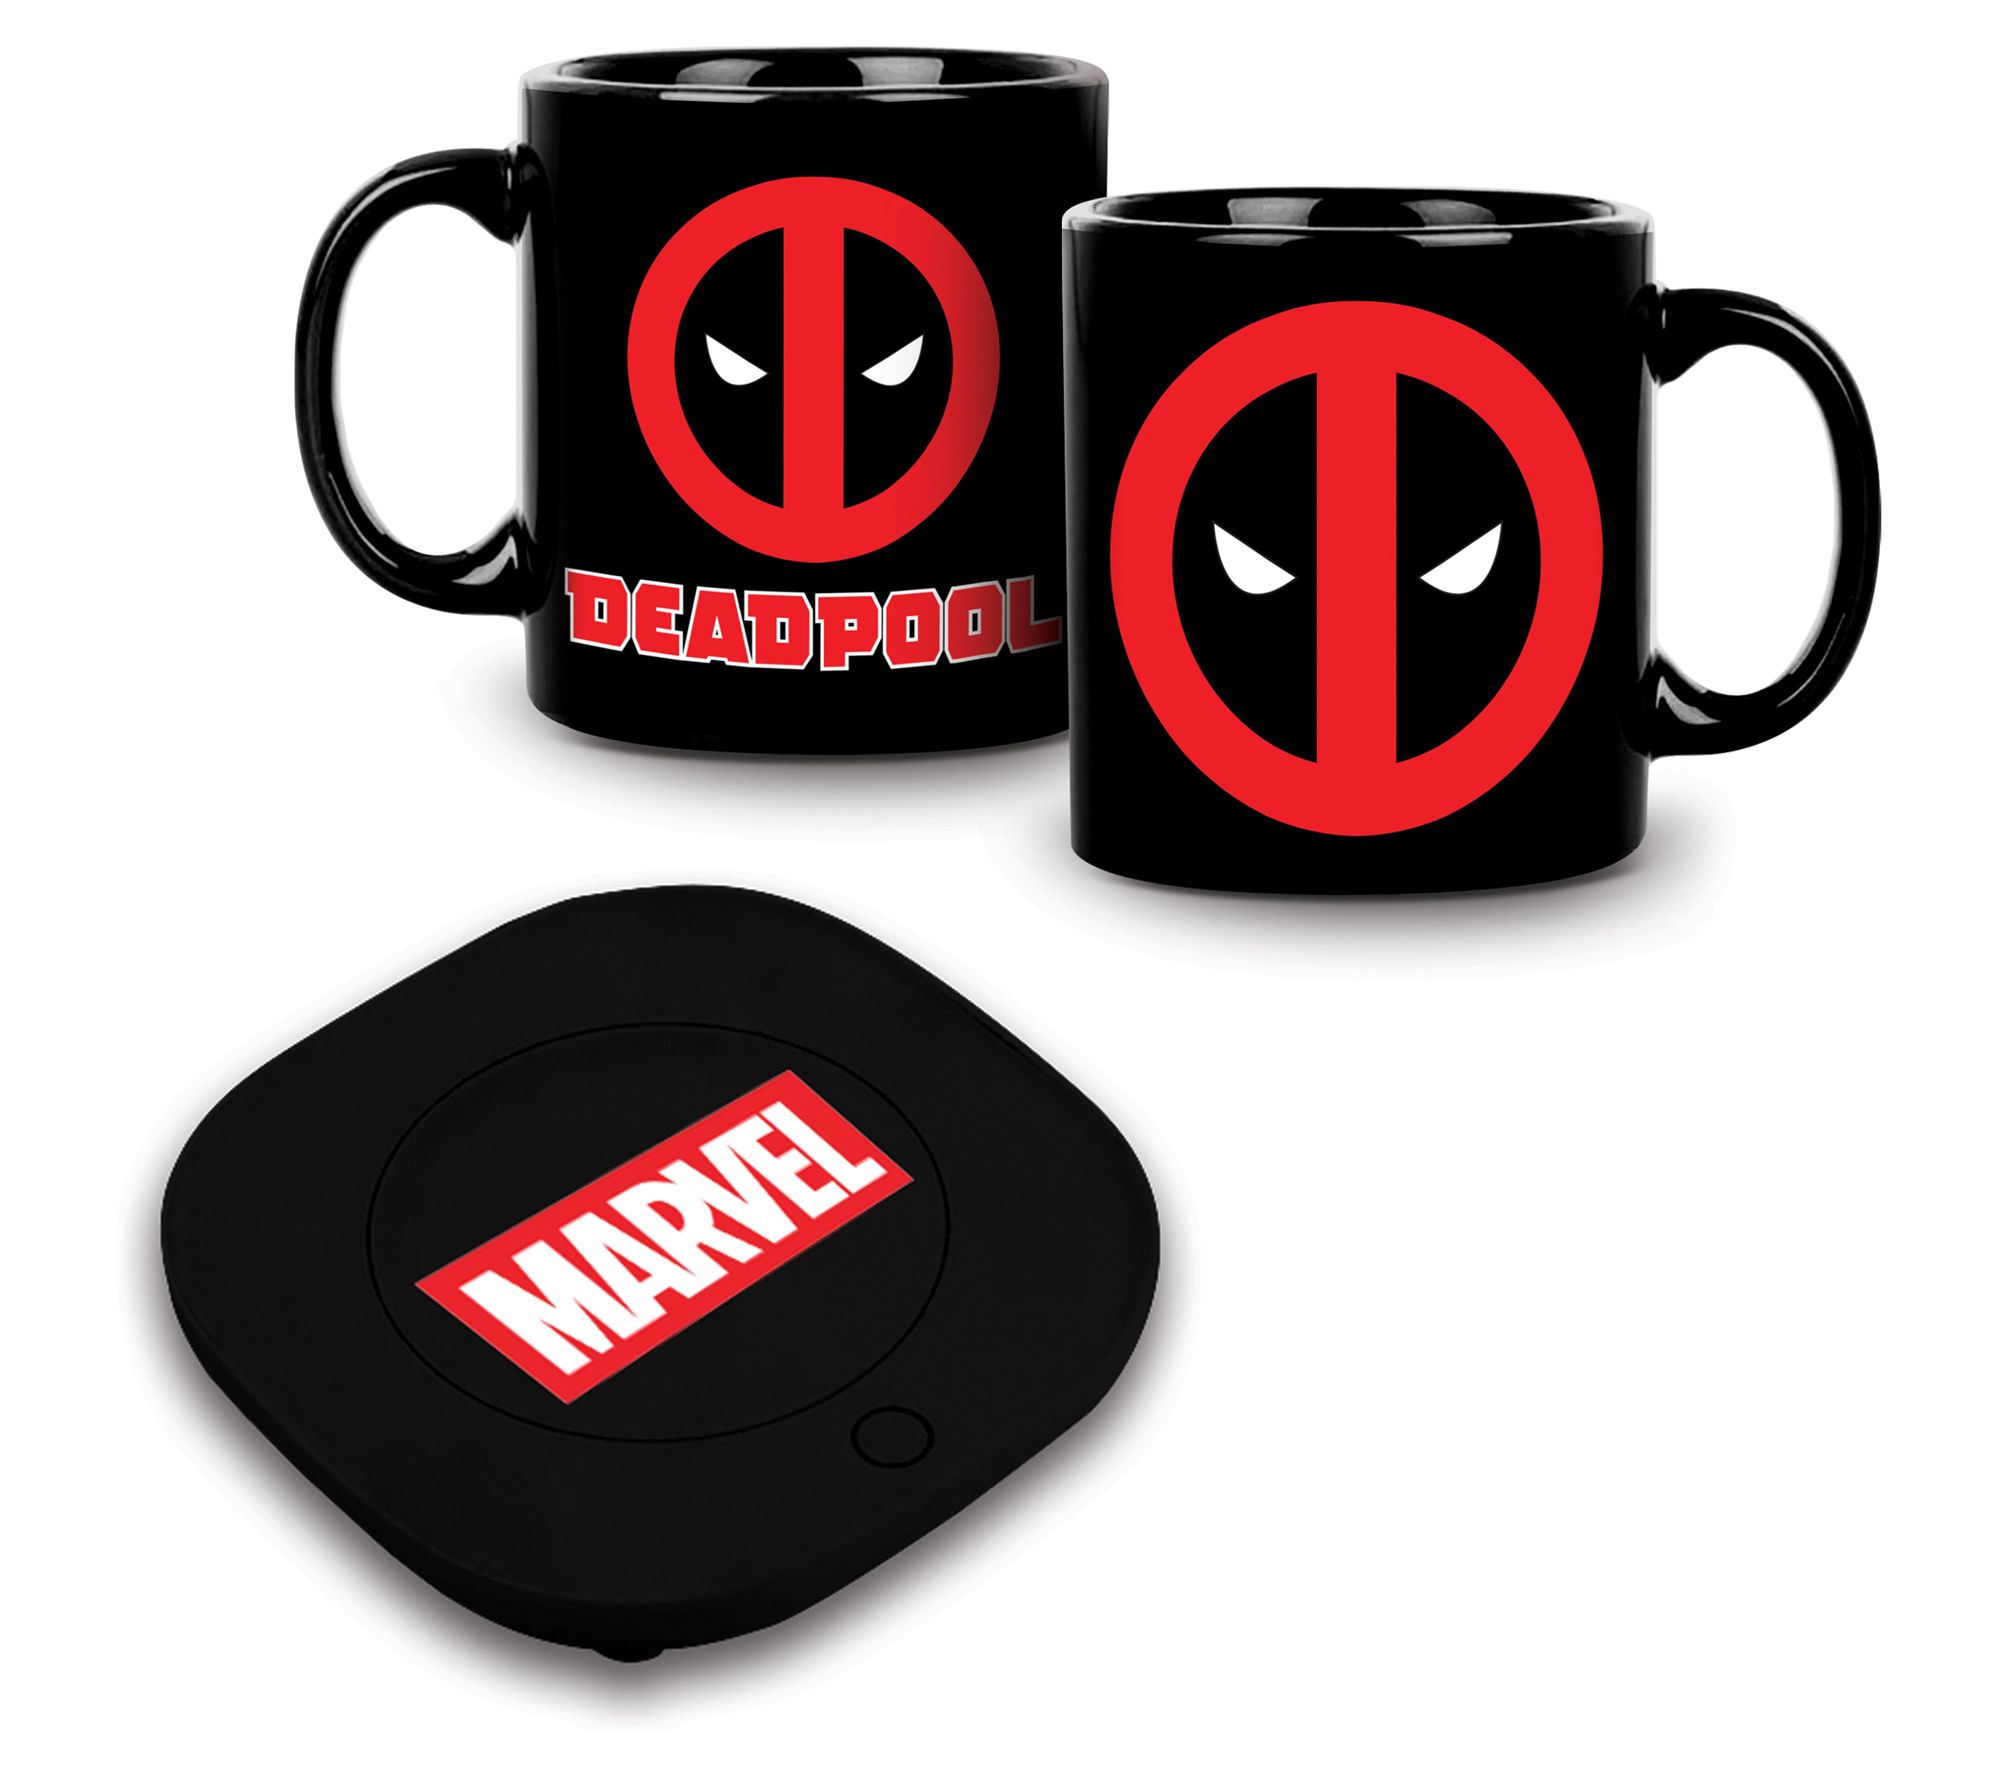 Uncanny Brands Marvel Deadpool Mug Warmer With Mug : Target